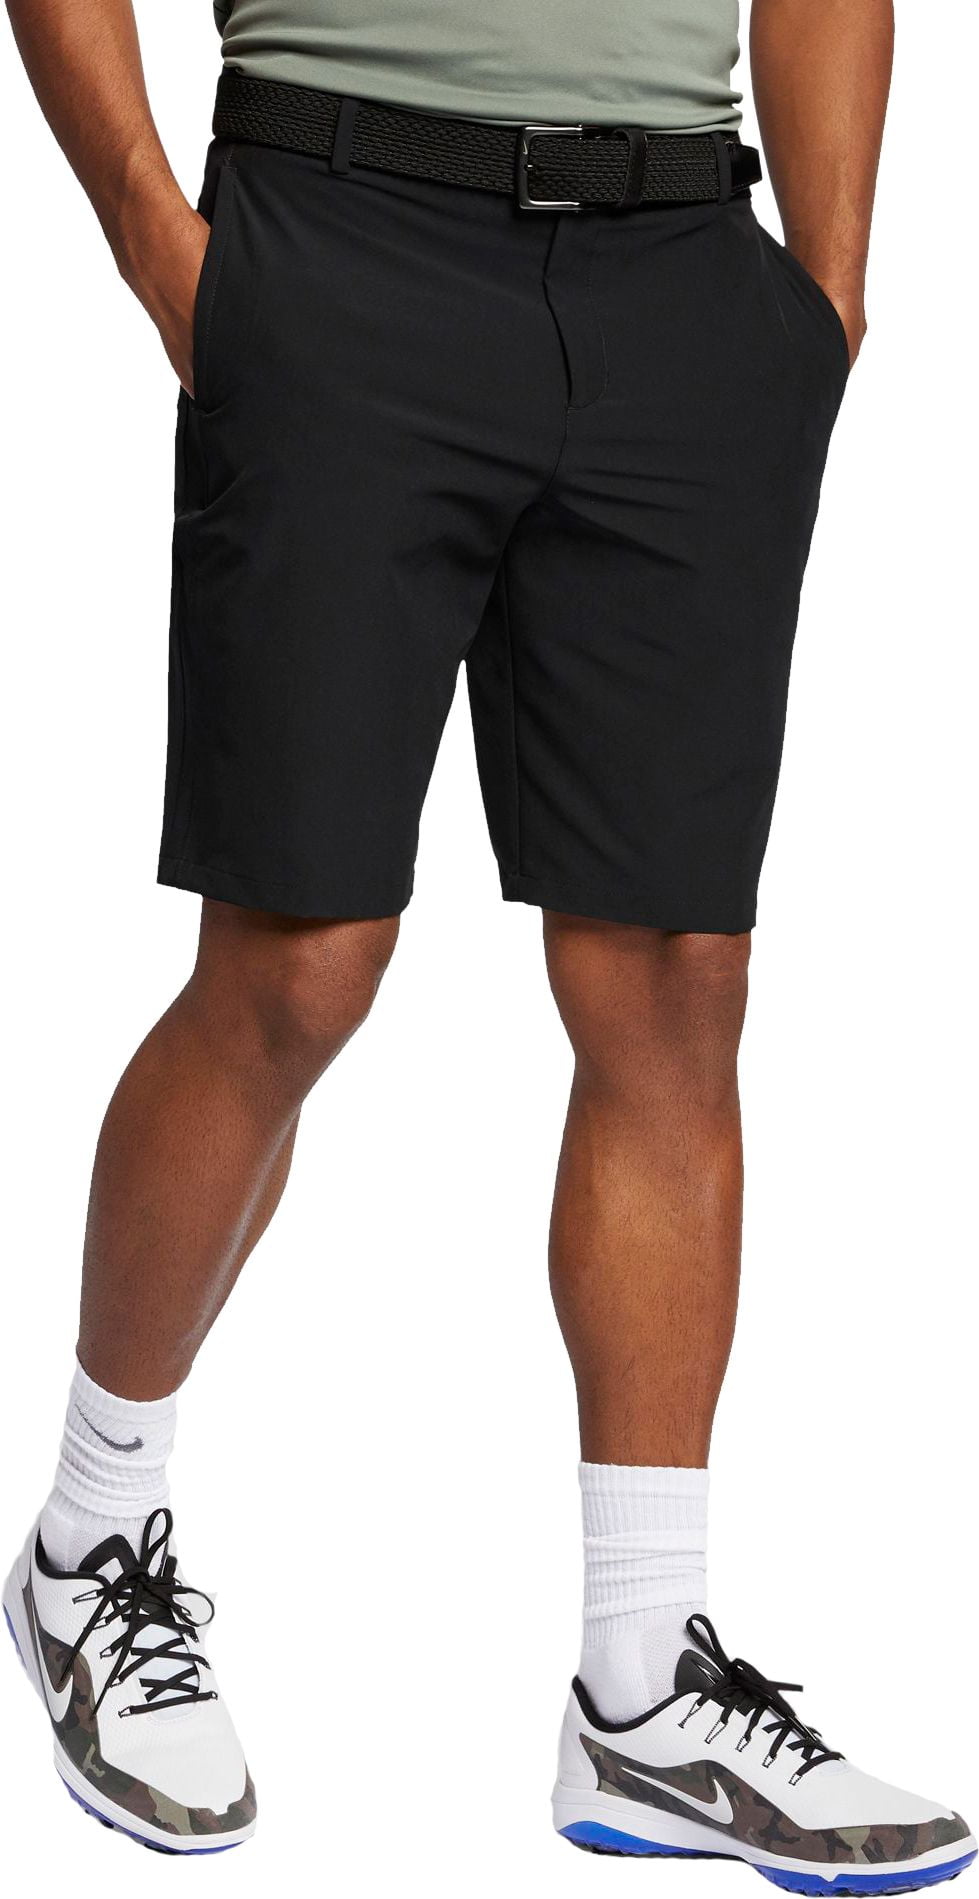 nike flex hybrid golf shorts